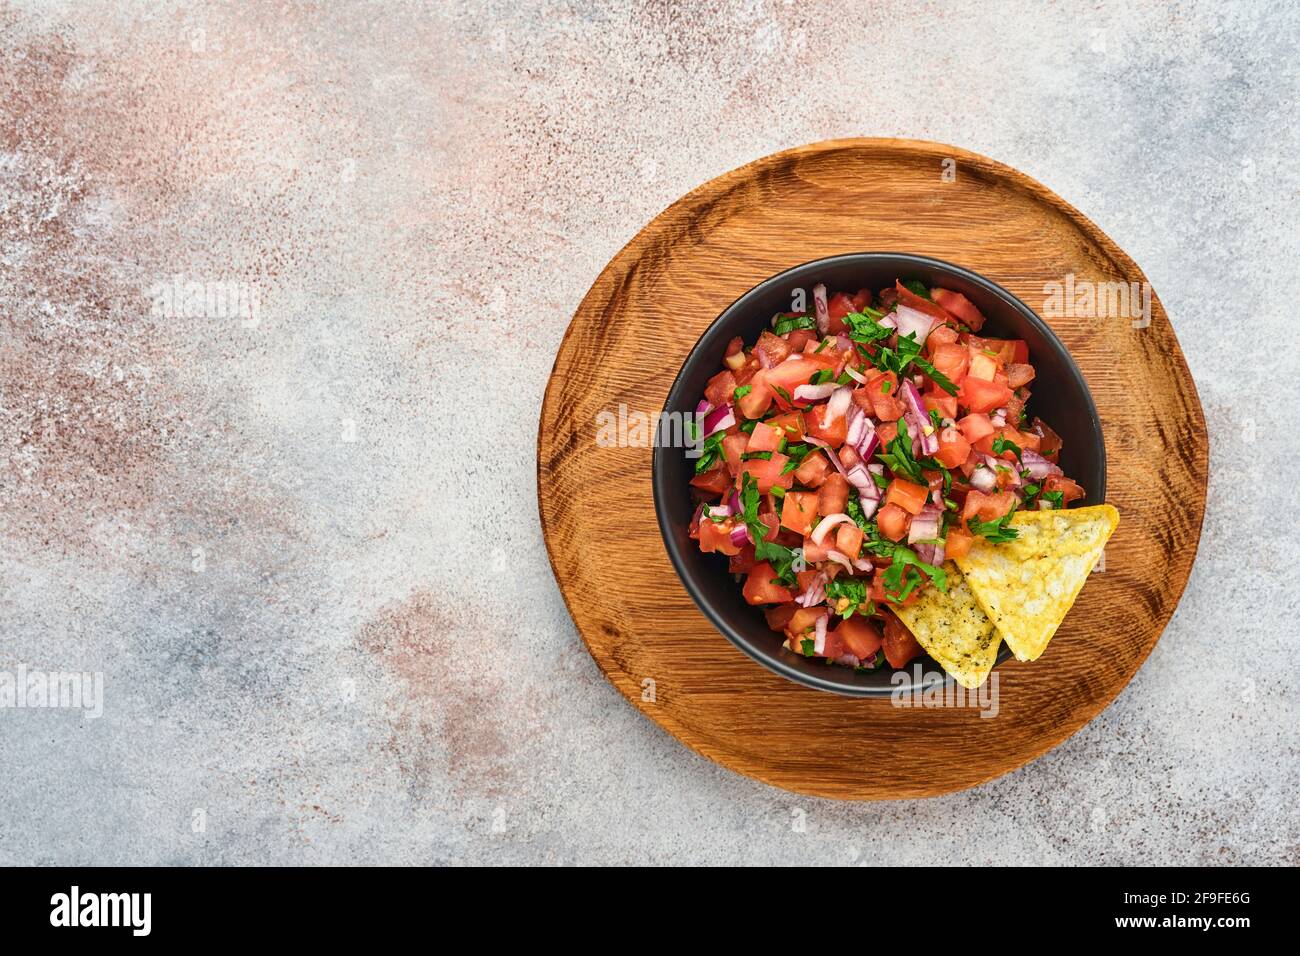 Traditionelle mexikanische Tomatensauce Salsa mit Nachos und Zutaten Tomaten, chile, Knoblauch, Zwiebel auf hellem Schieferstein Hintergrund. Konzept des lateinischen am Stockfoto